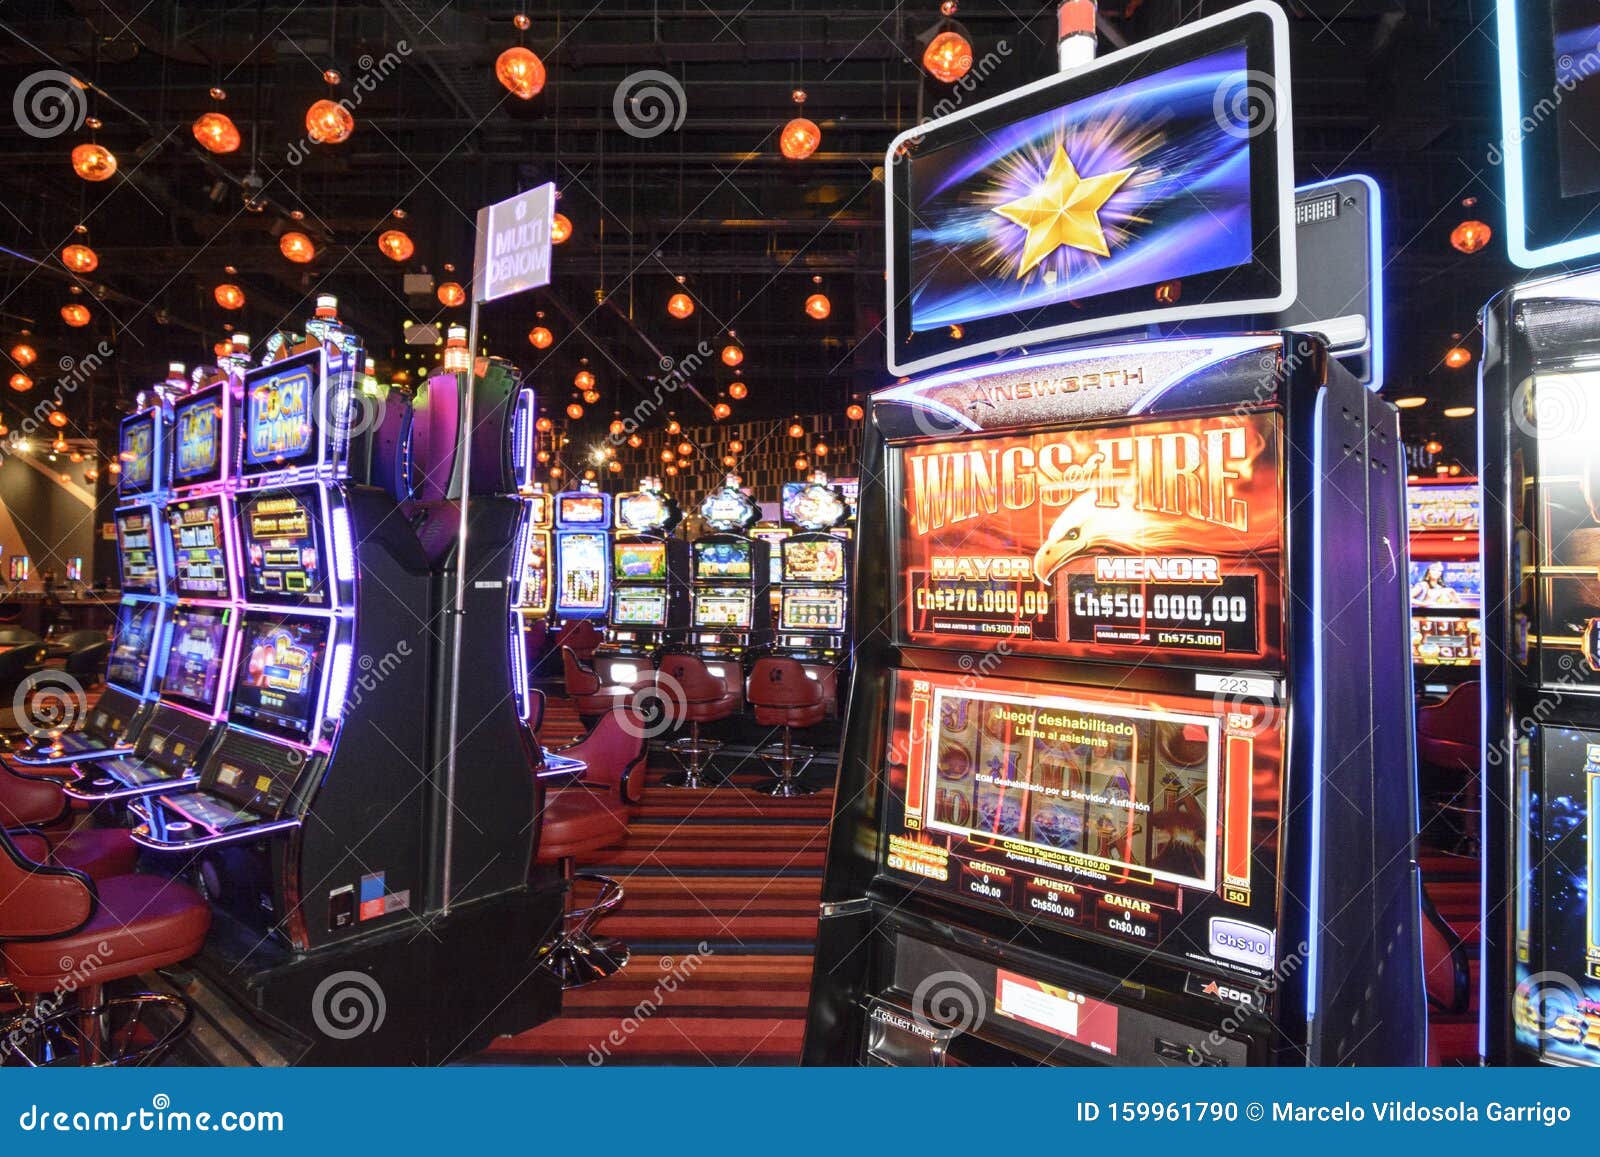 5 kritische Fähigkeiten, um casino online bemerkenswert gut zu verlieren